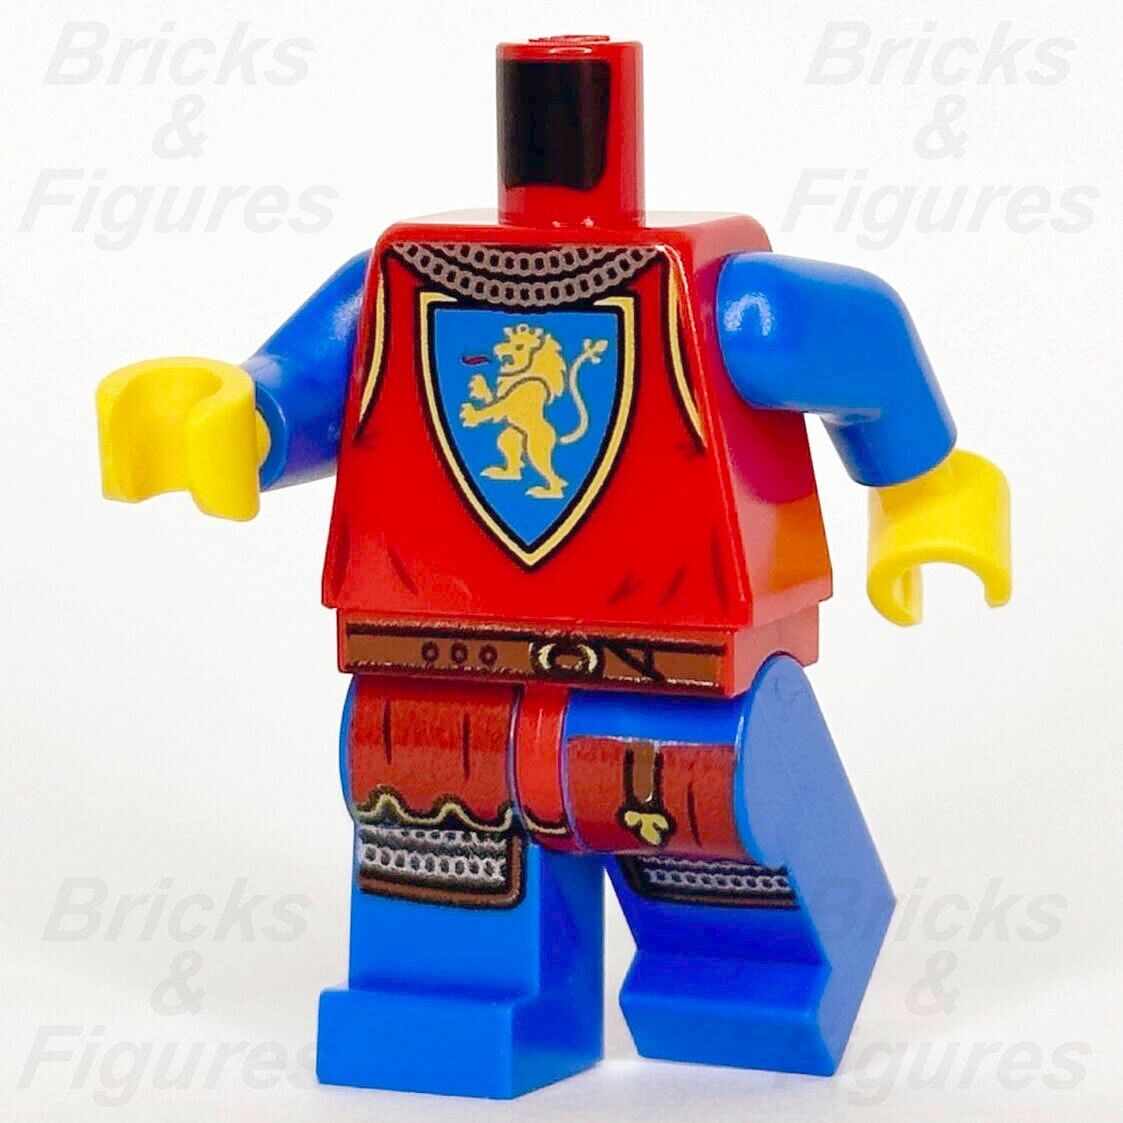 LEGO Castle Lion Knight Torso & Legs Minifigure Body Parts Soldier 10305 New - Bricks & Figures